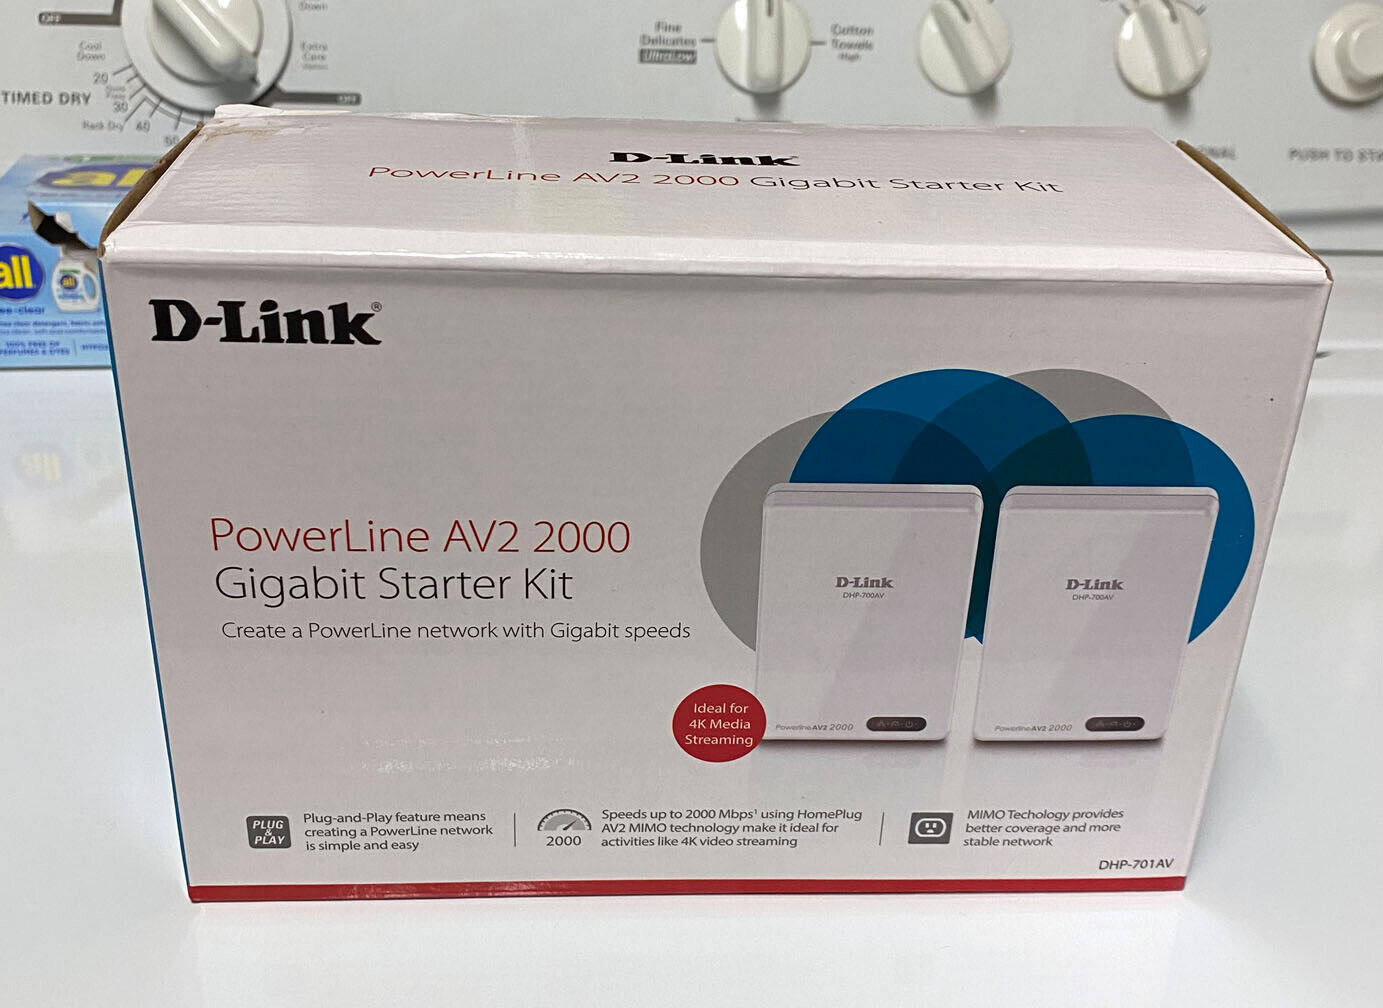 D-Link DHP-700AV PowerLine AV2 2000 Gigabit (2 unit) Starter Kit